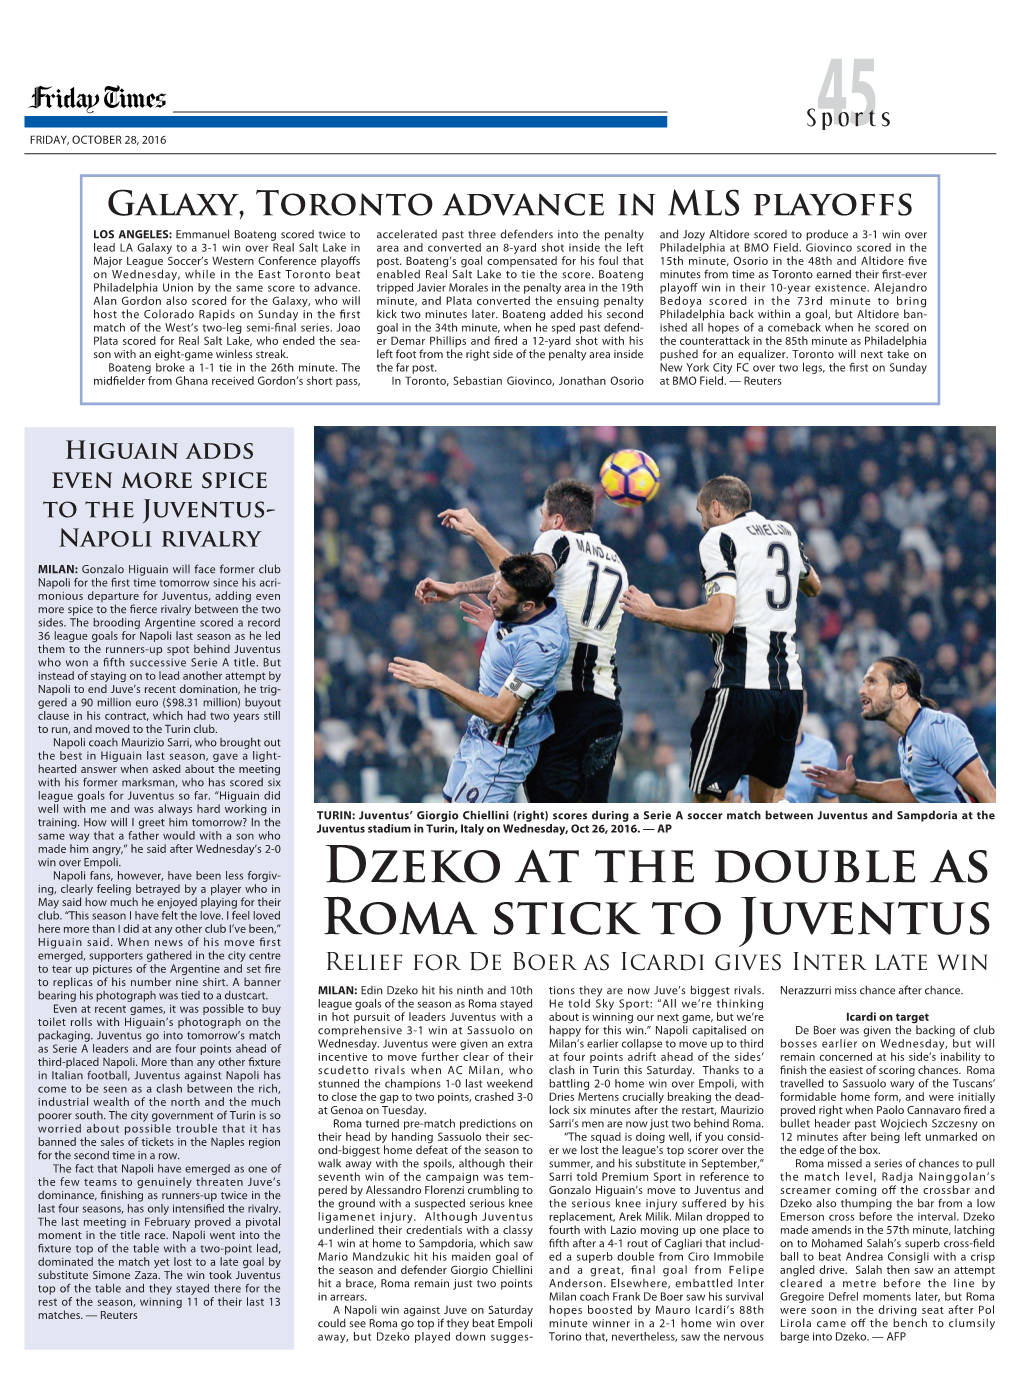 Dzeko at the Double As Roma Stick to Juventus